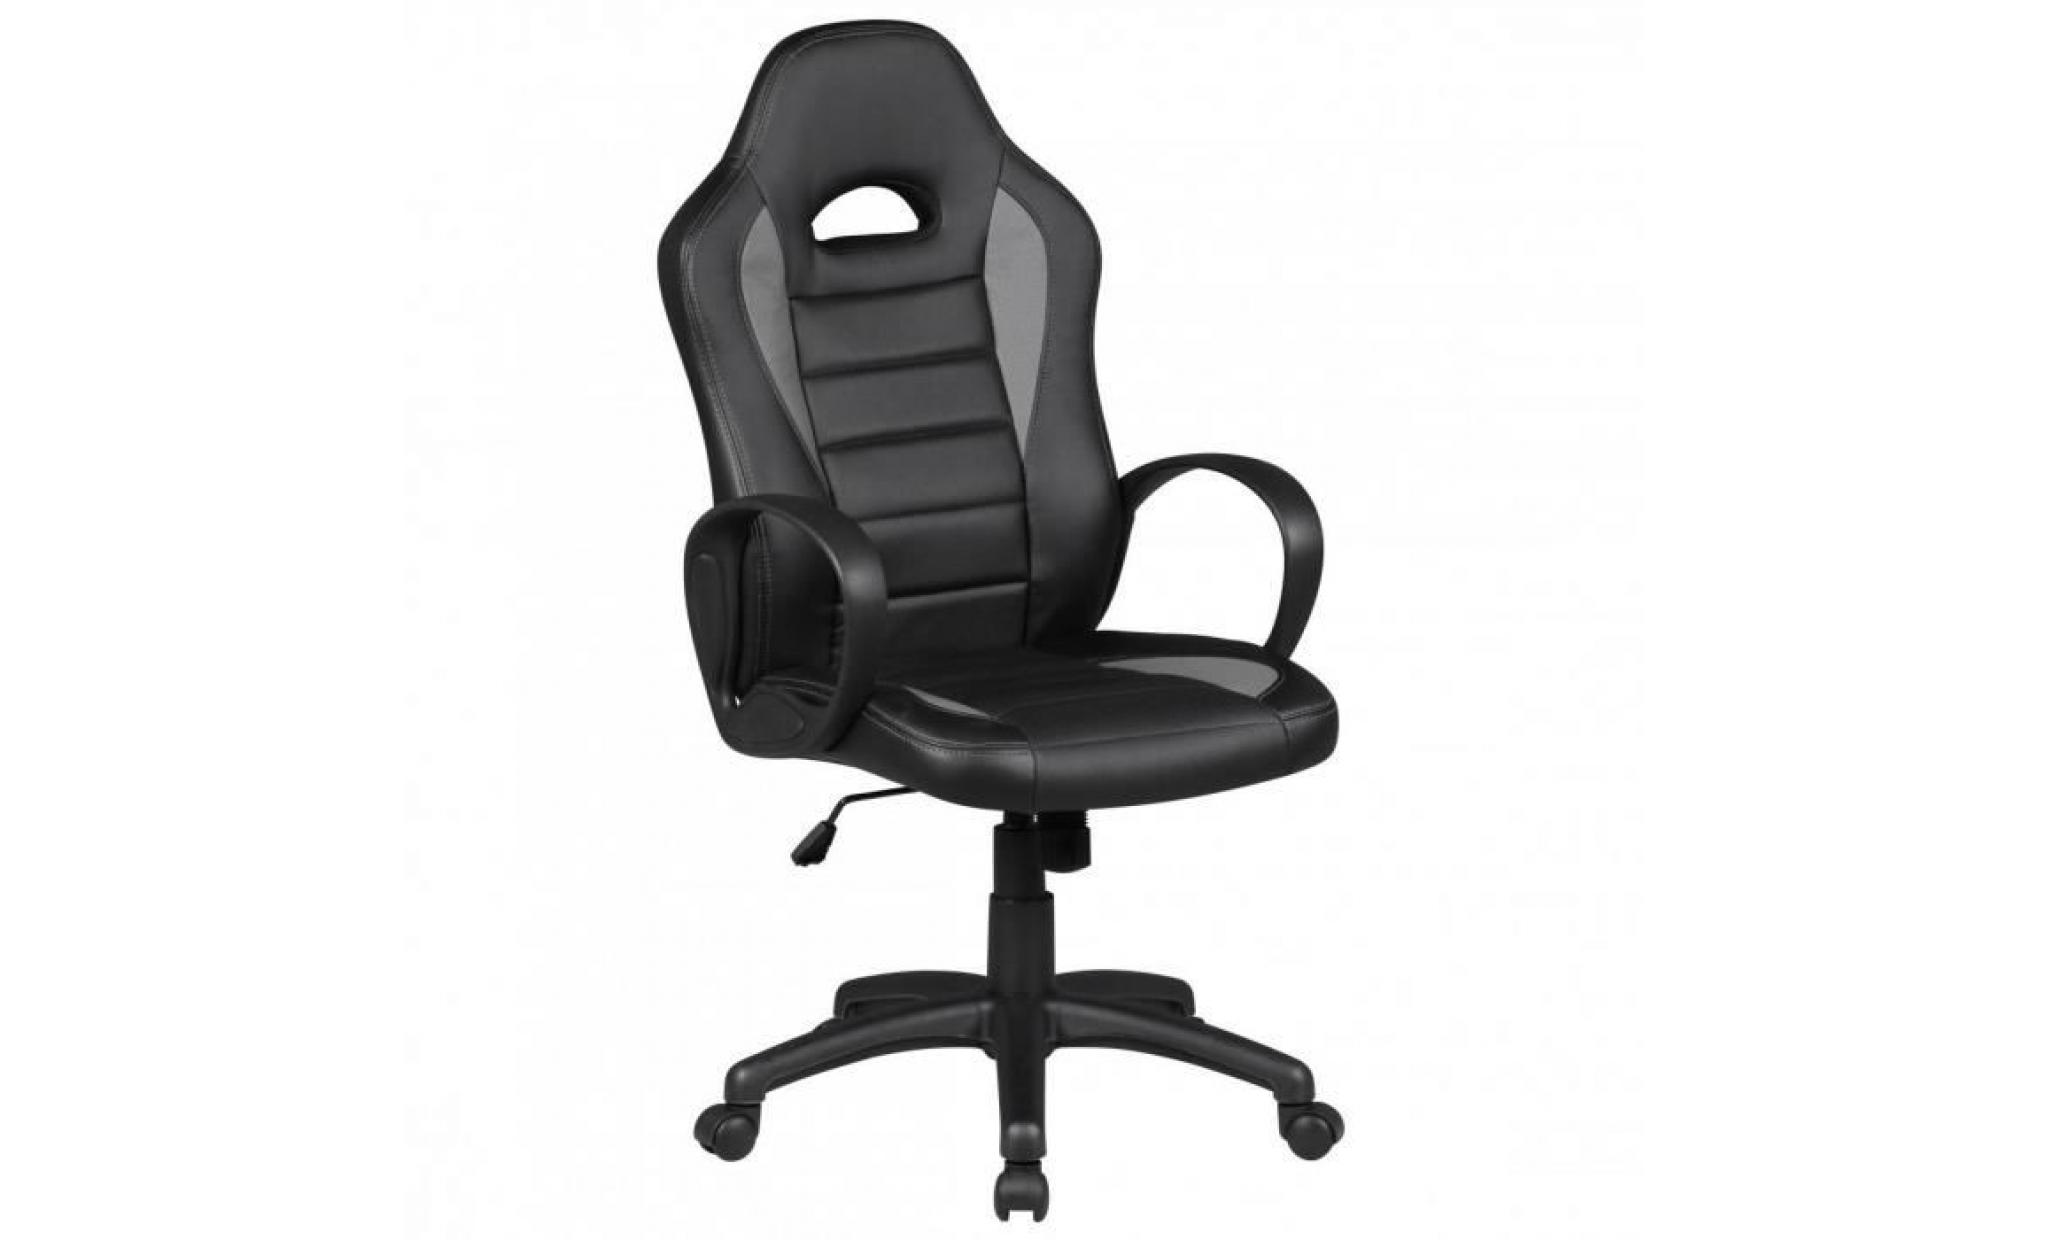 chaise de bureau dakar noir gris racing chefsessel racer chaise pivotante chaise inclinable 120 kg fonction de bureau